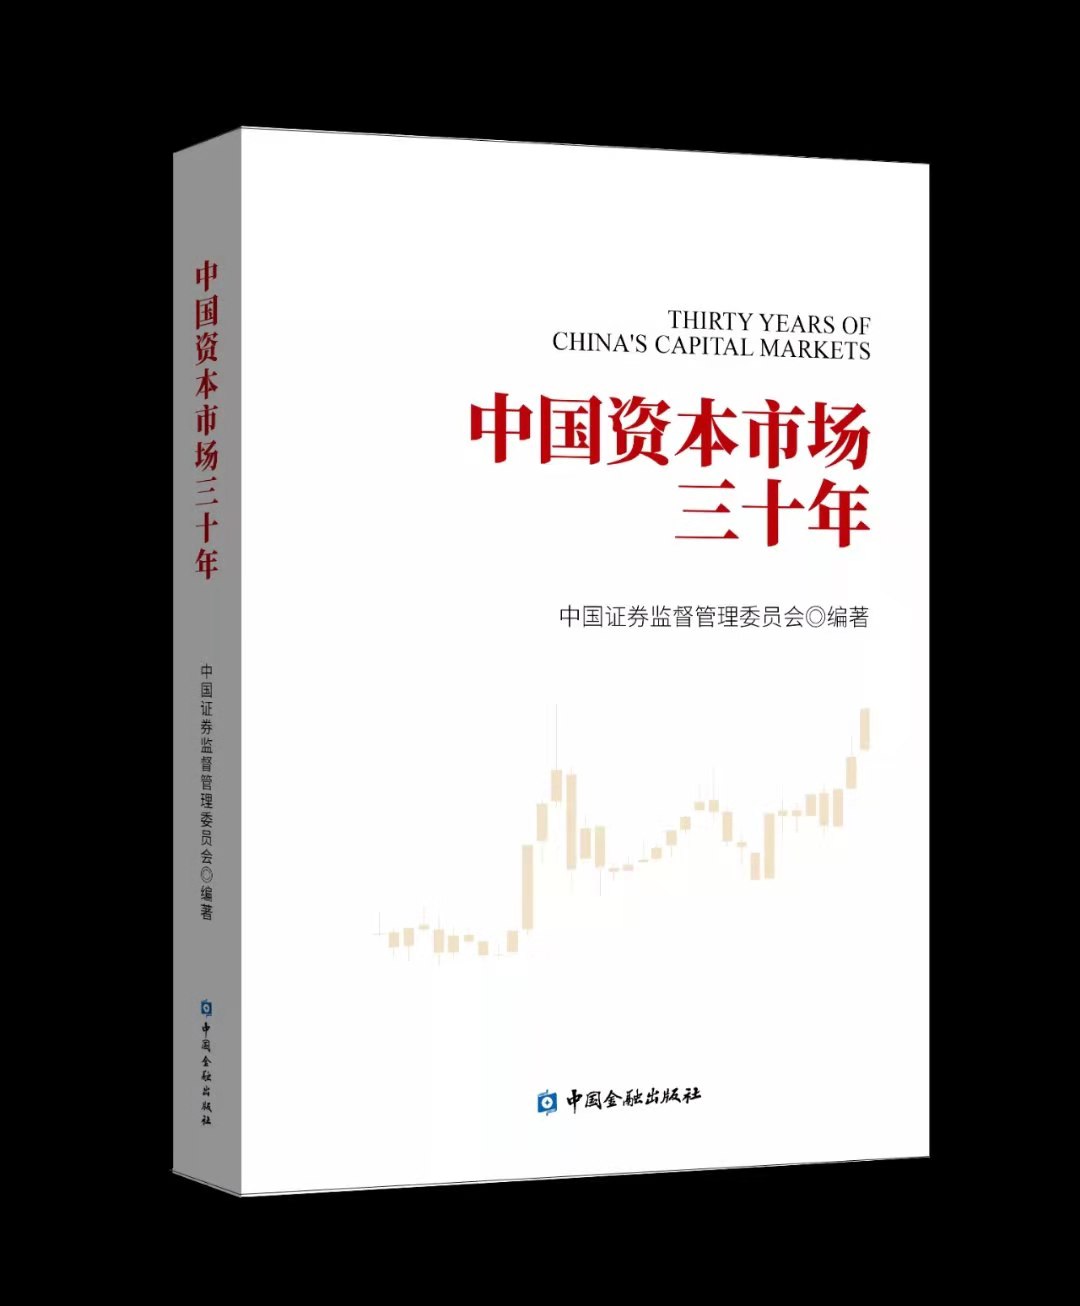 （文章配图）全景展示中国资本市场30年发(835039)-20210509151116.jpg